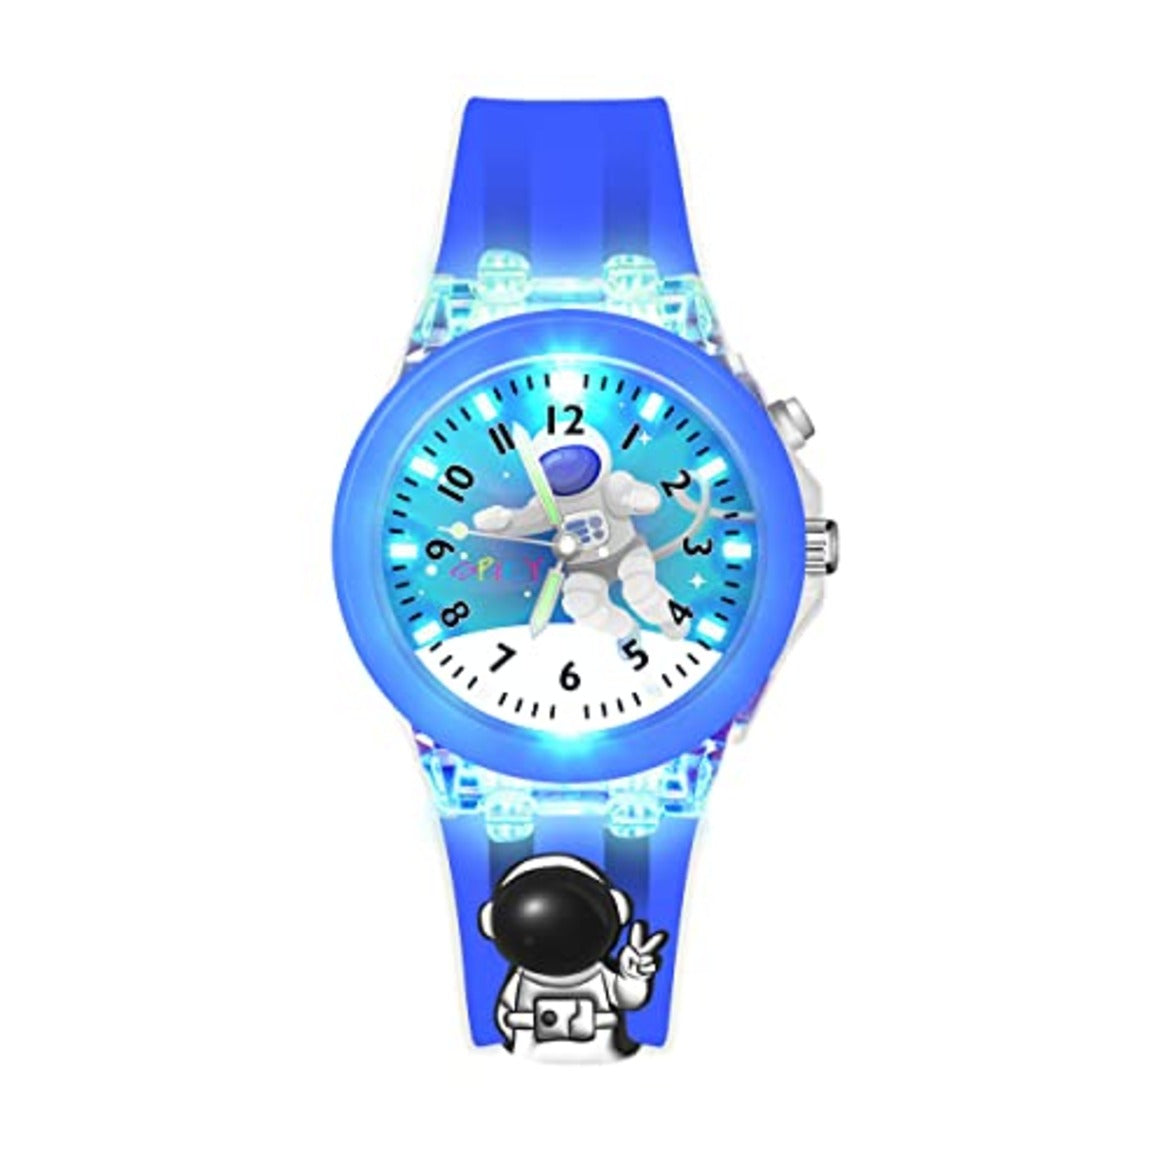 Spiky 3D Astronaut & Rabbit Cartoon Analog Light Watch Combo - Blue & Pink